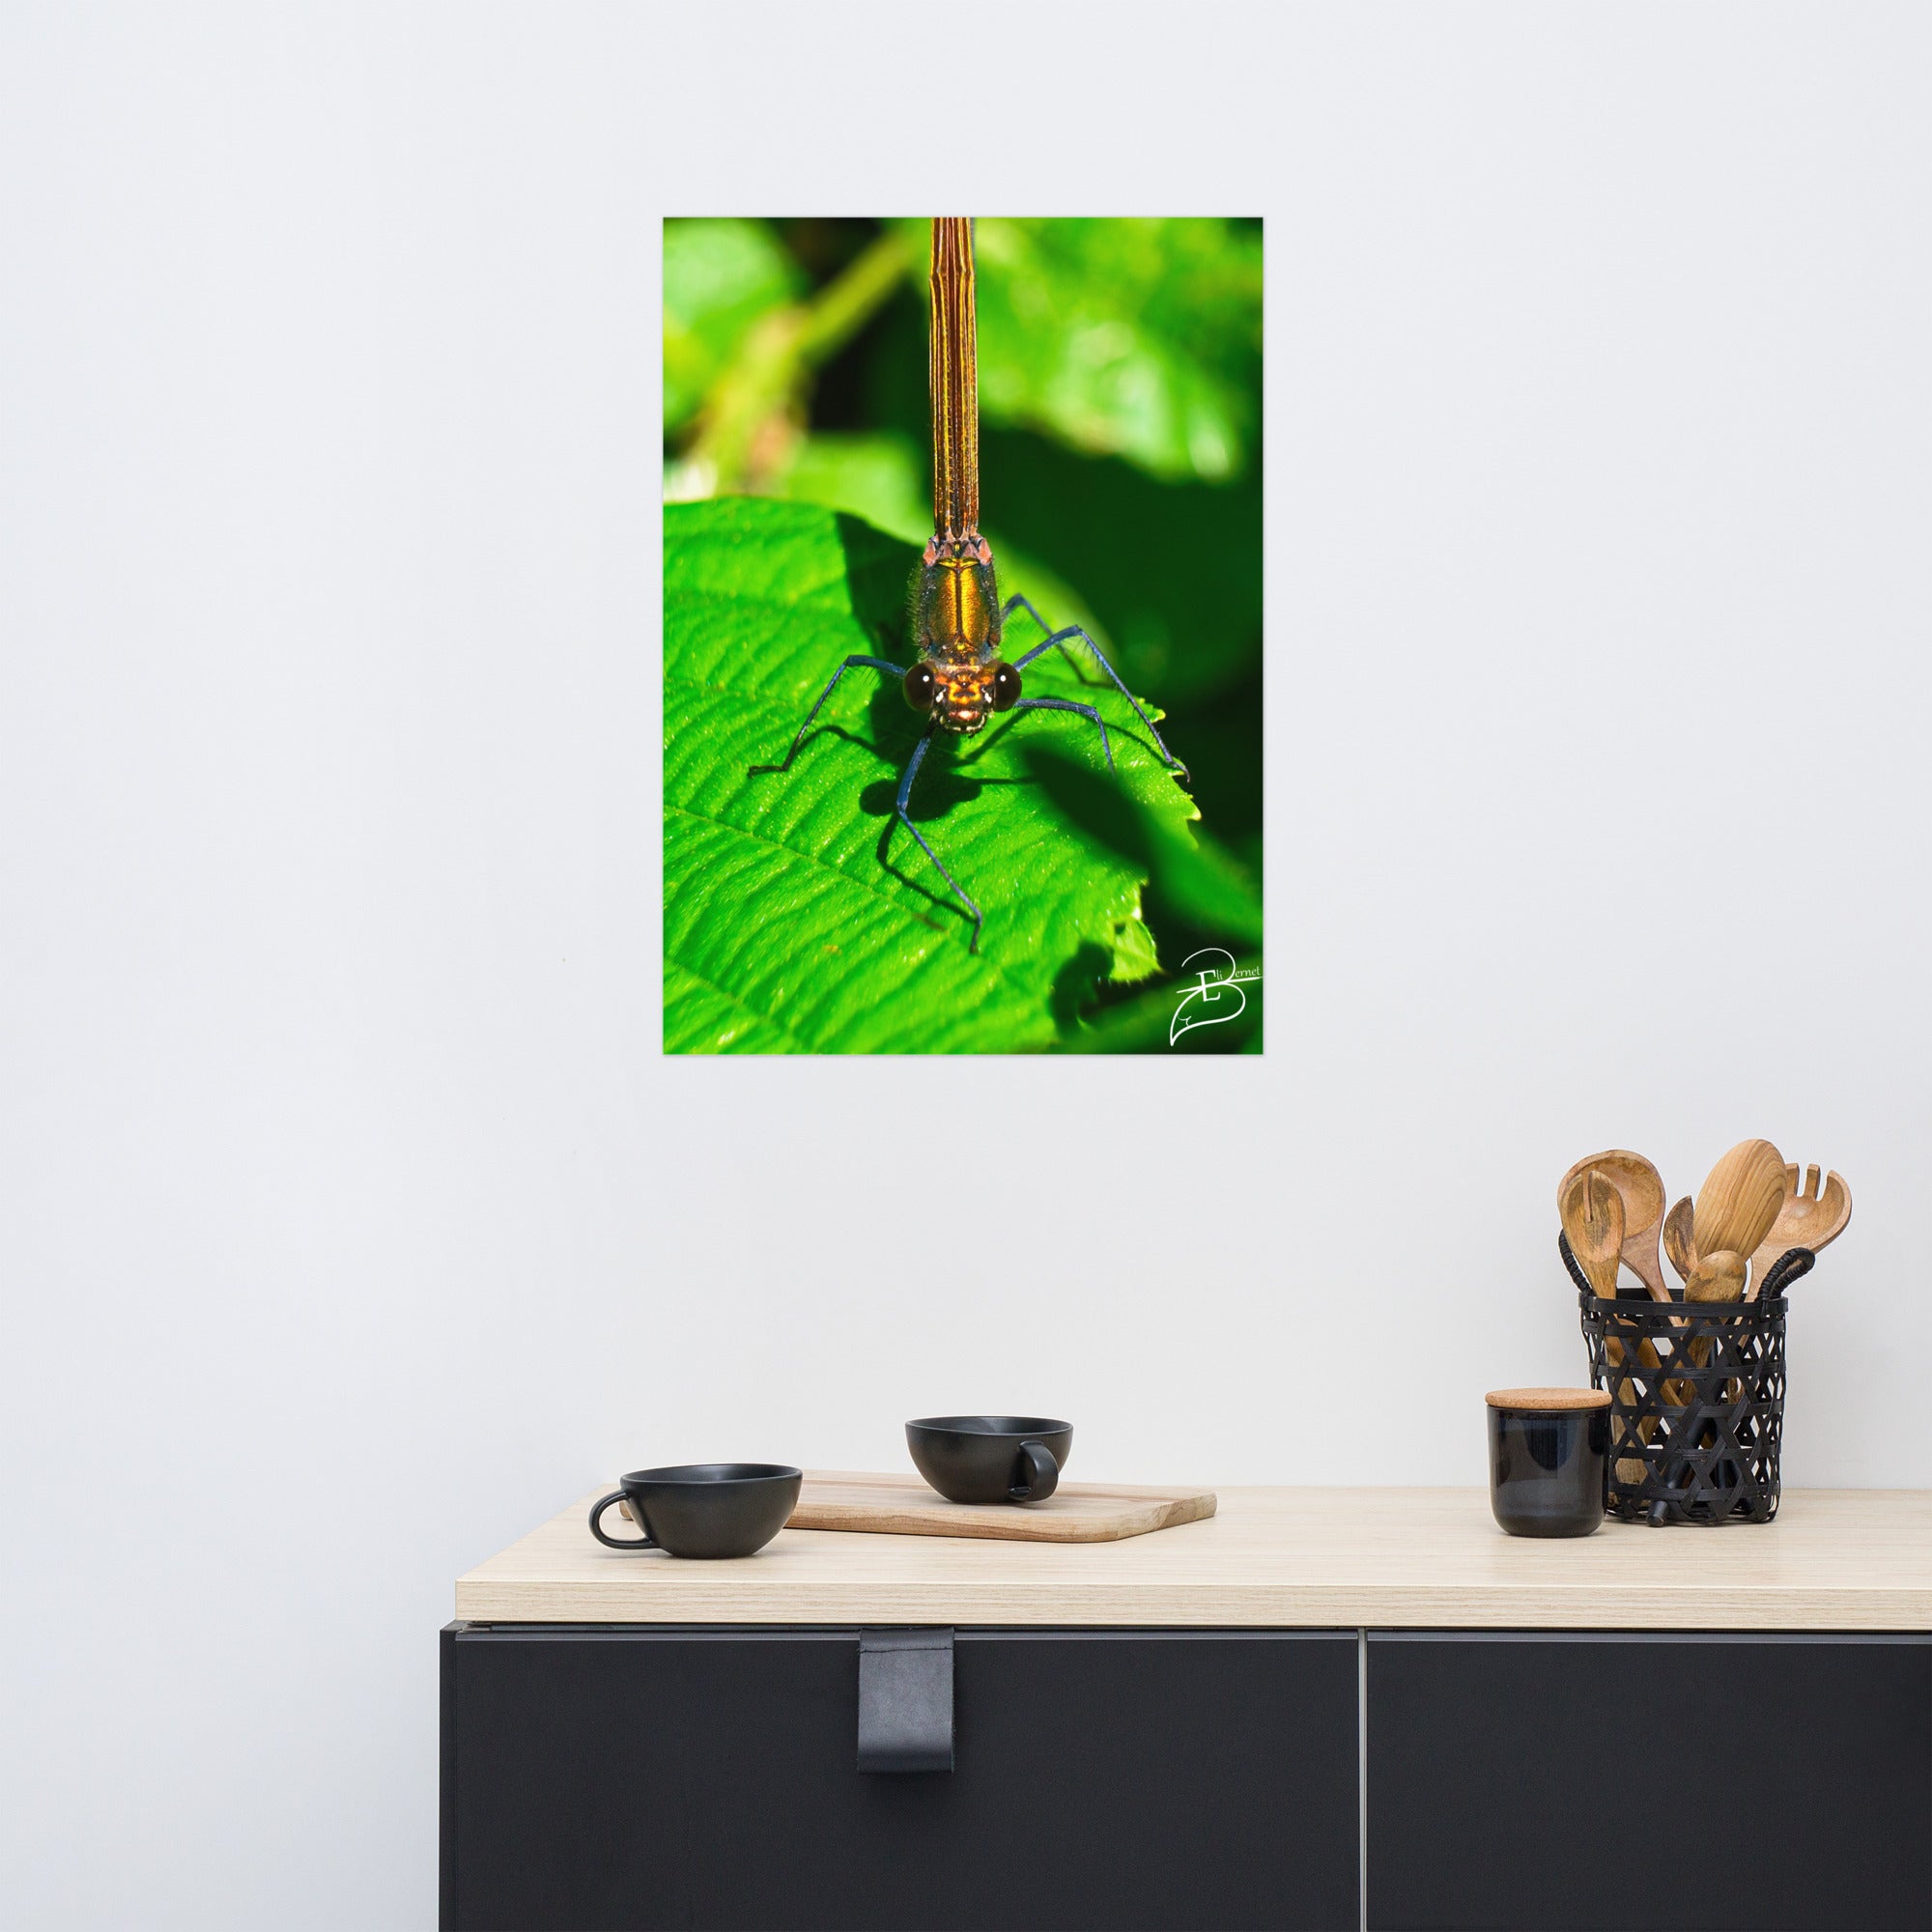 Photographie macro d'une femelle Libellule sur une feuille verte, les yeux fixant l'objectif, capturant la délicatesse de la nature, œuvre signée Eli Bernet.